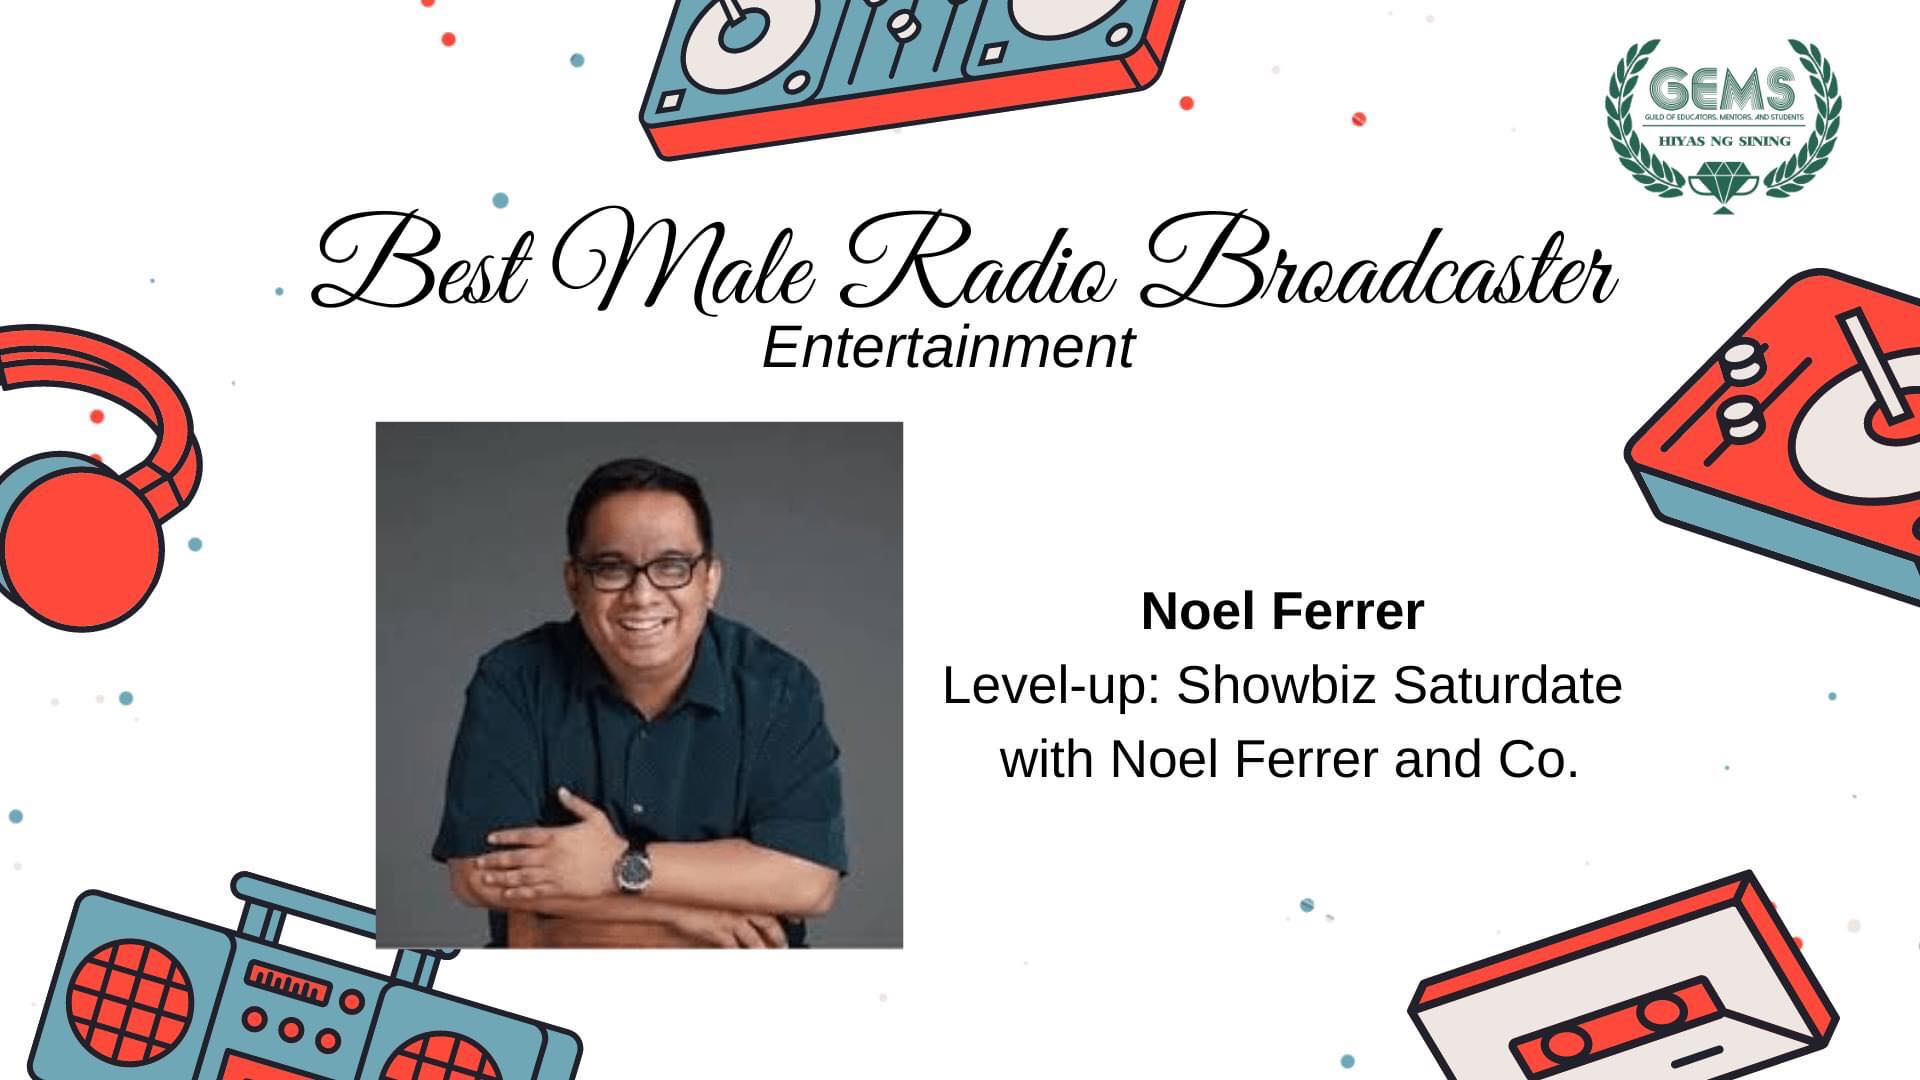 GEMS Awards: Noel Ferrer wins Best Radio Program for Entertainment